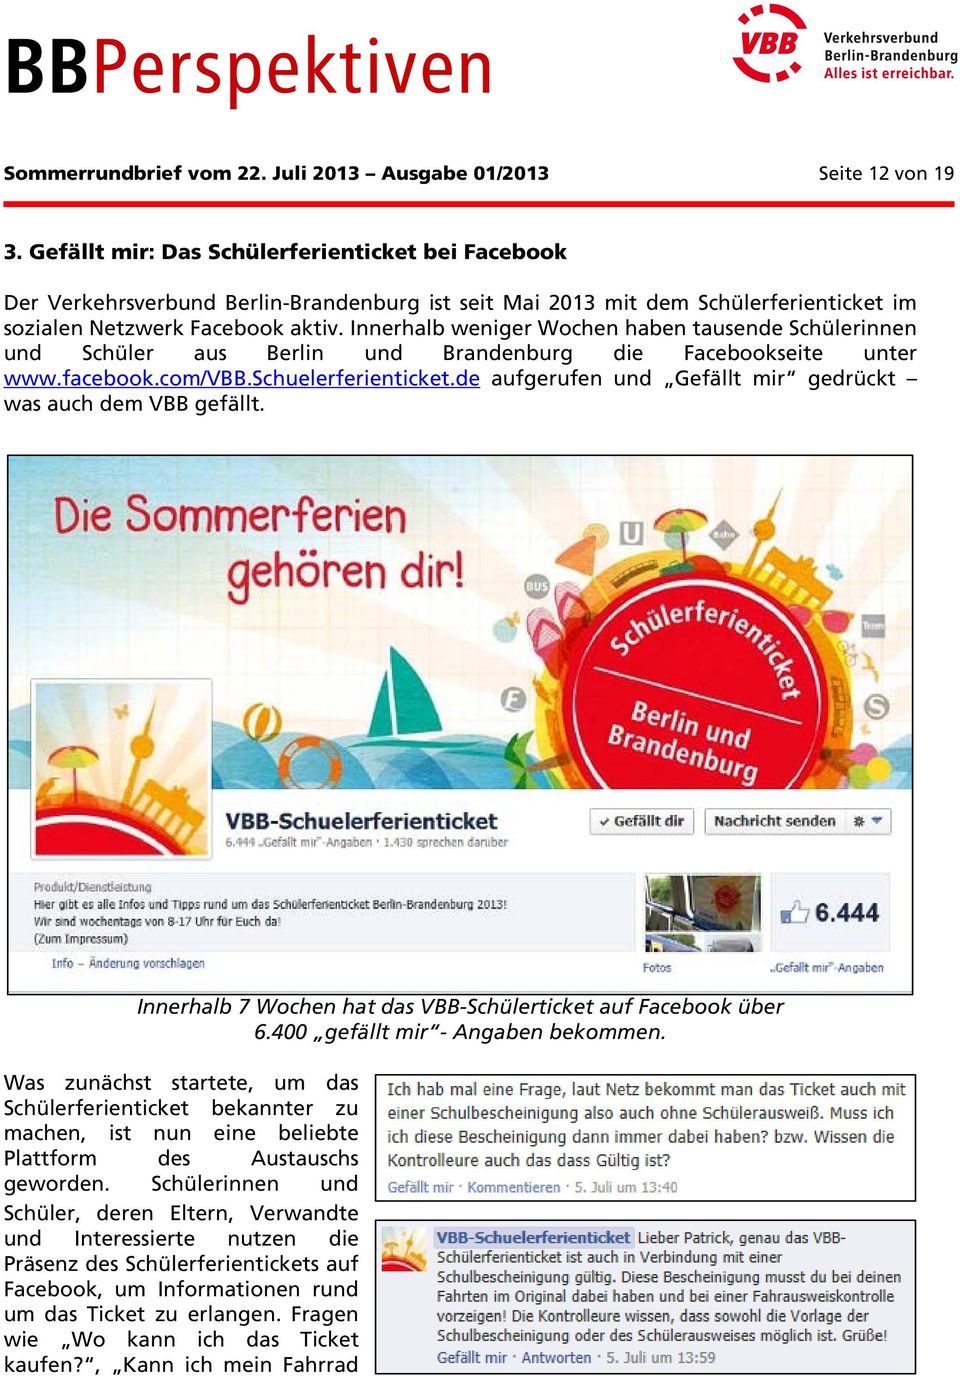 Innerhalb weniger Wochen haben tausende Schülerinnen und Schüler aus Berlin und Brandenburg die Facebookseite unter www.facebook.com/vbb.schuelerferienticket.